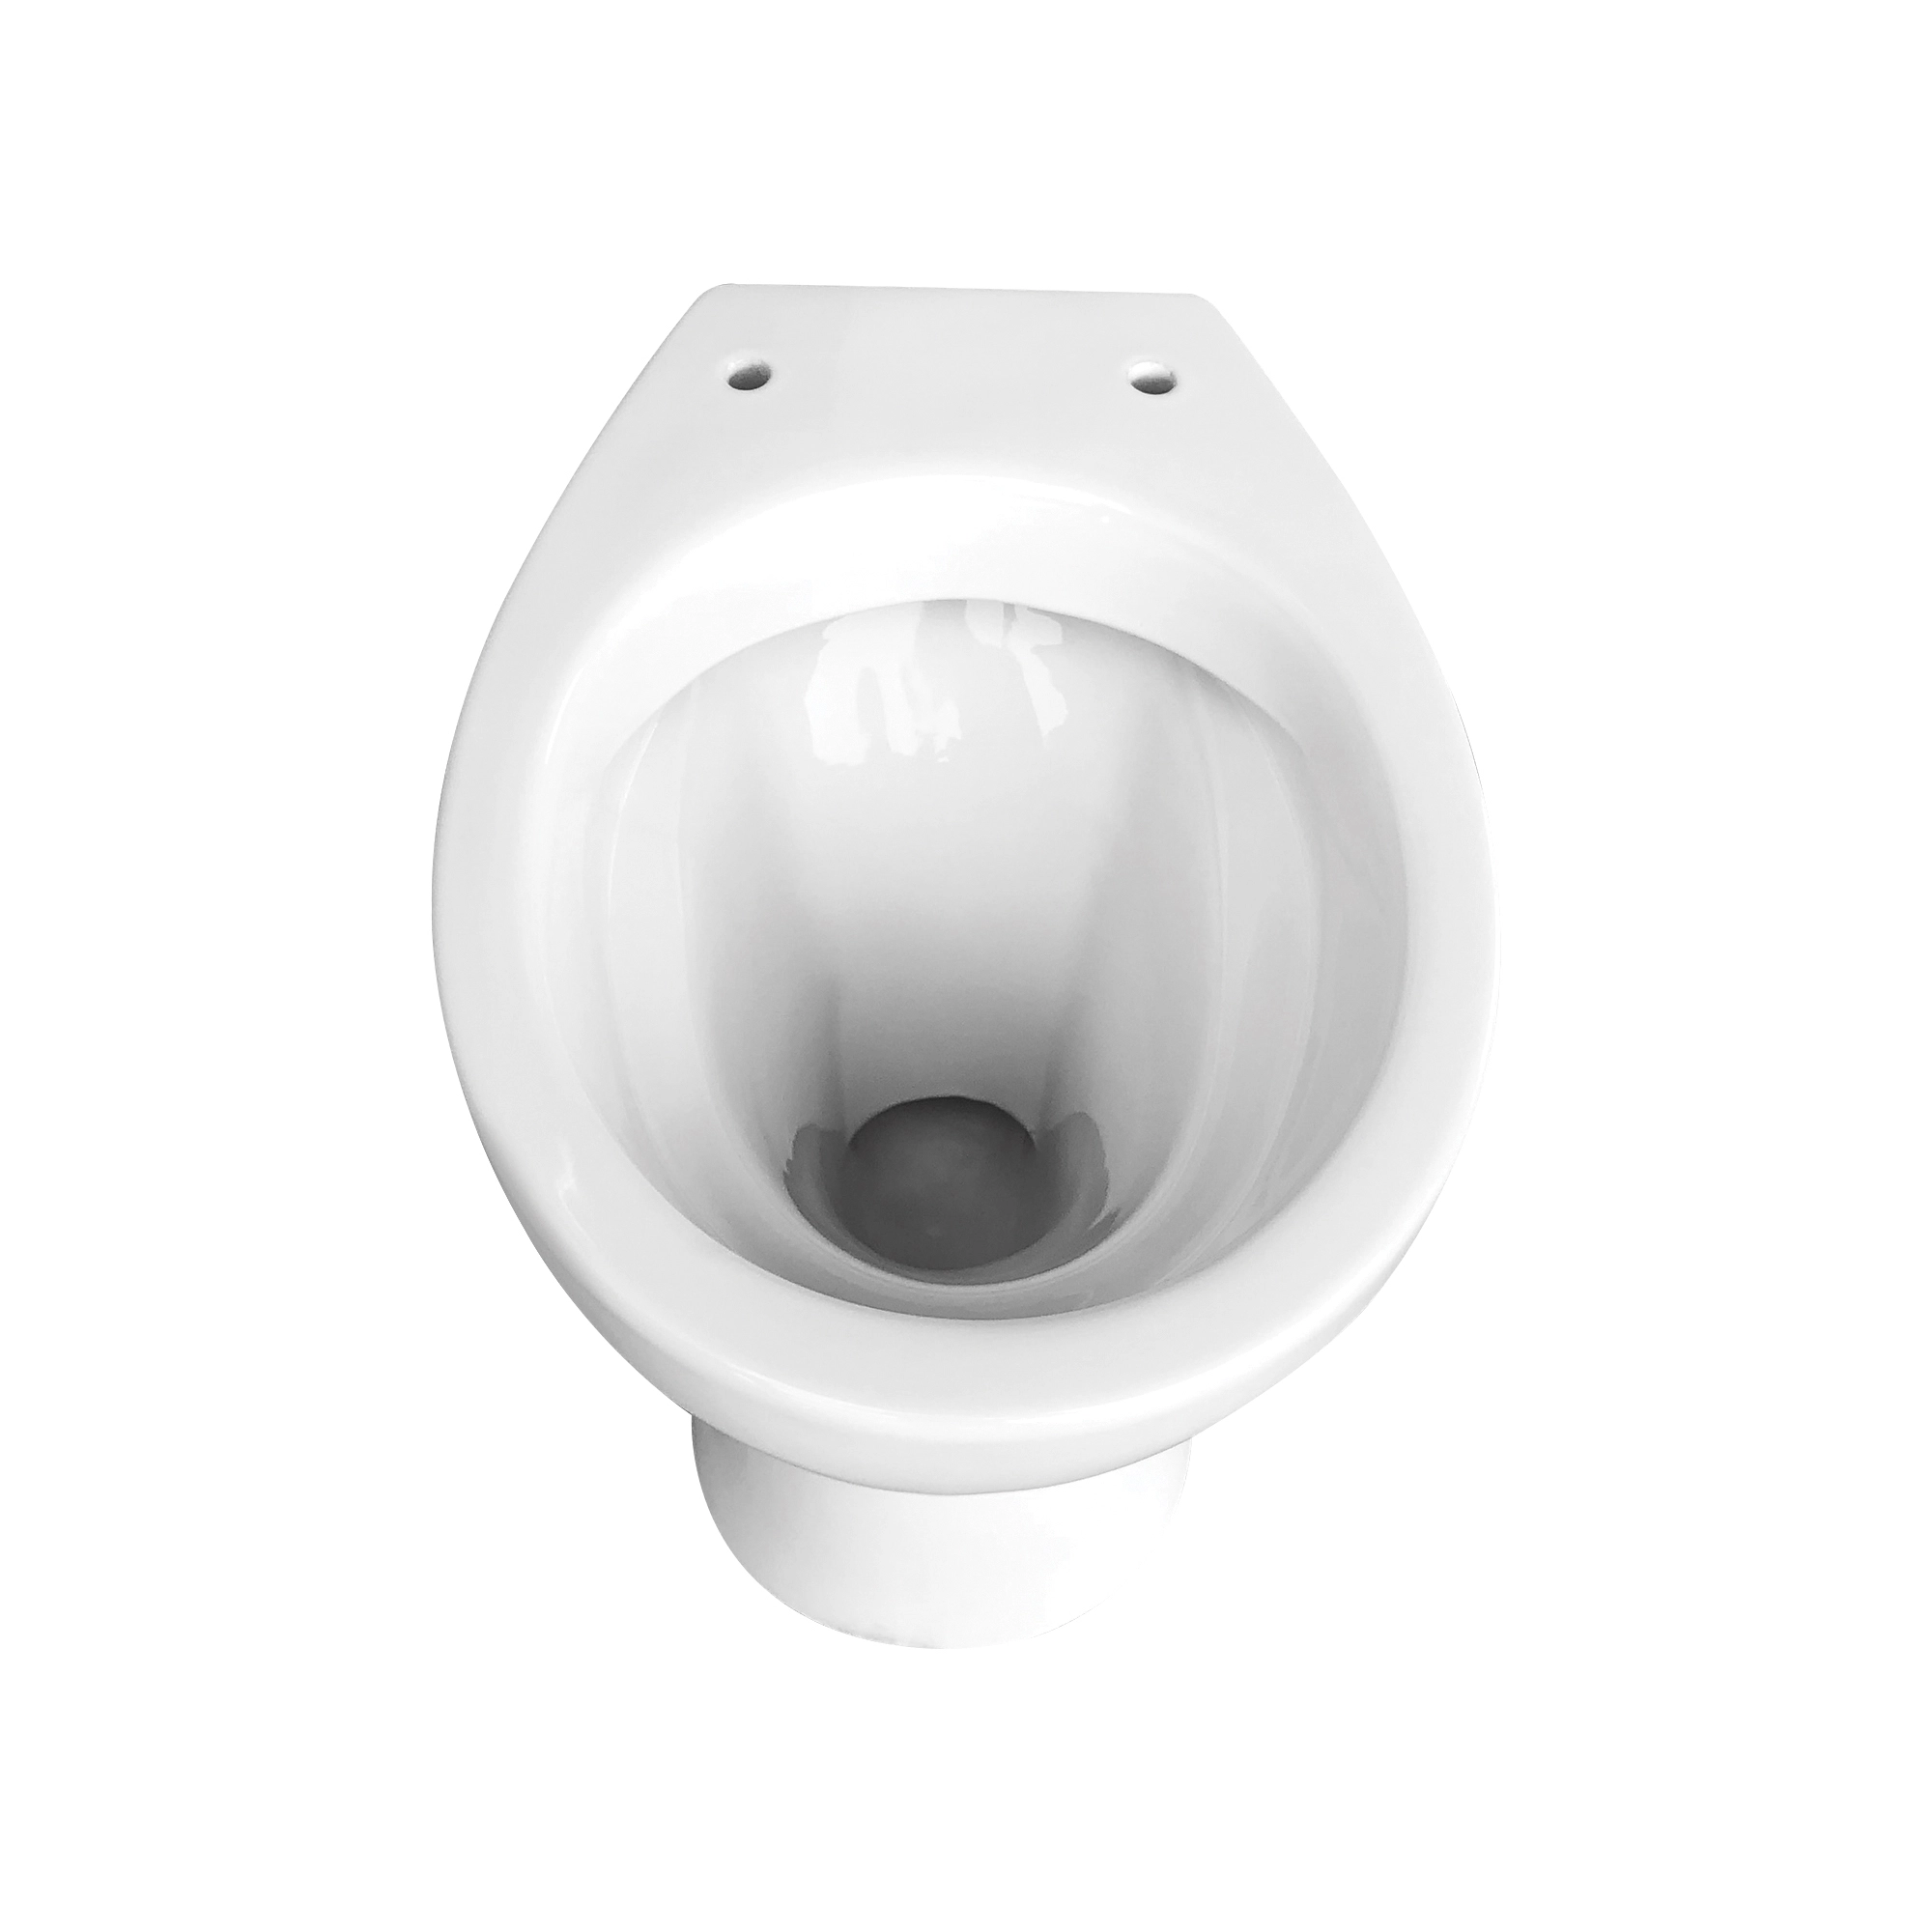 Stand-WC Tiefspüler OBI kaufen spülrandlos bei